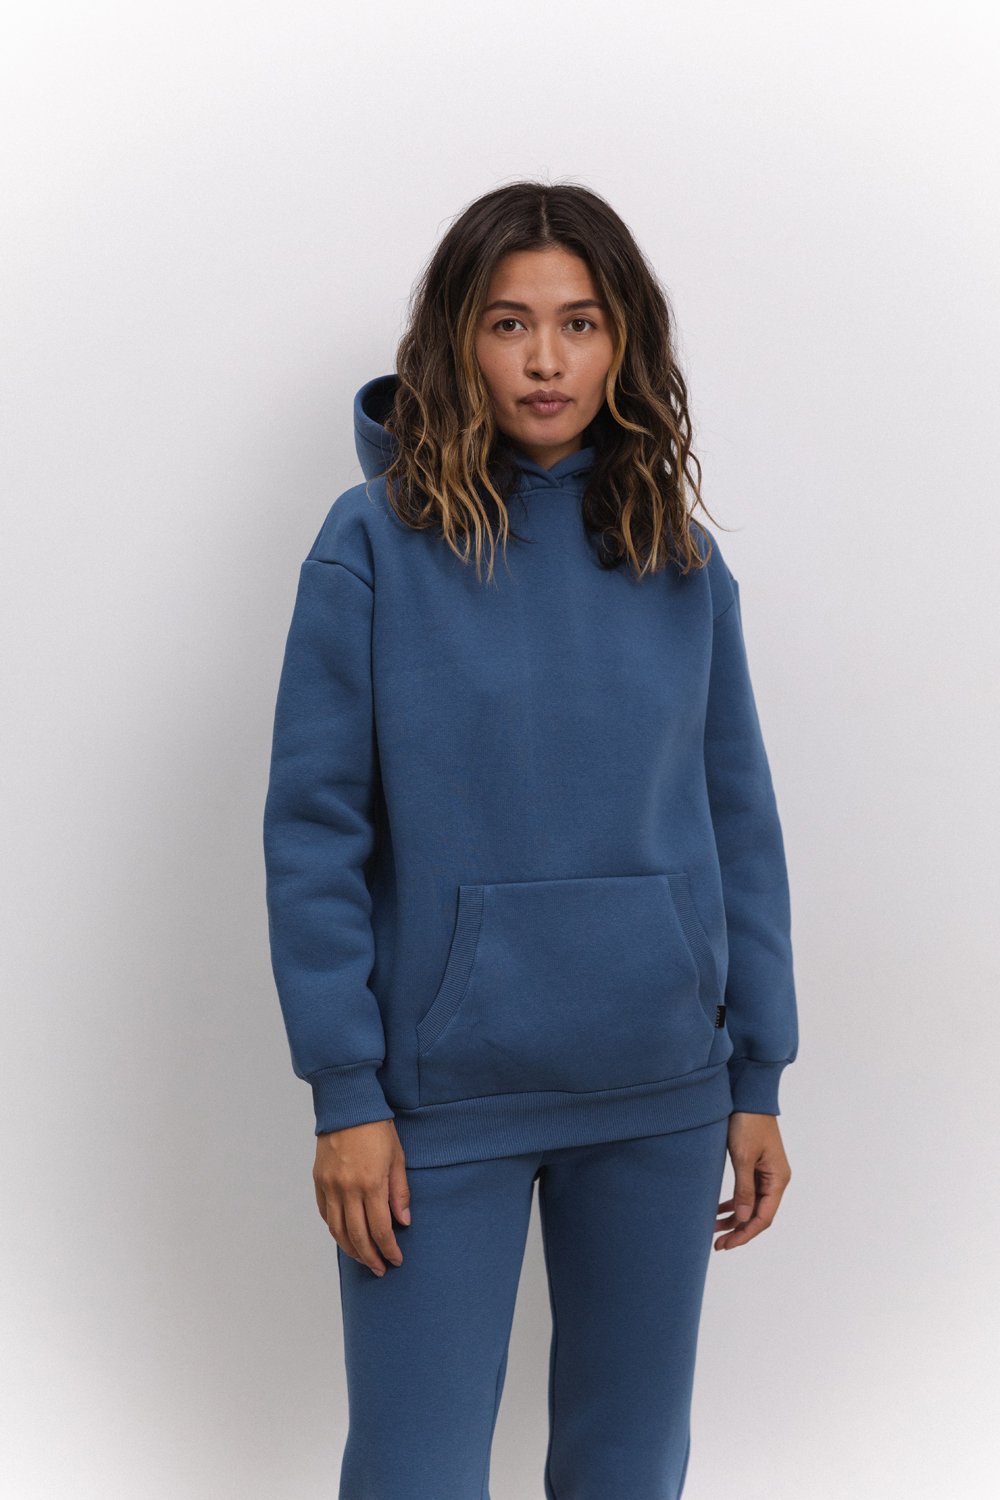 Blue sweatshirt with hood